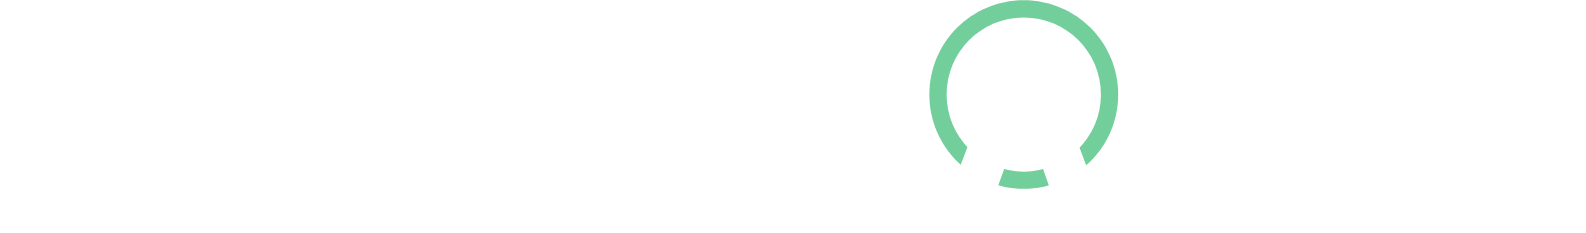 Medpace Logo groß für dunkle Hintergründe (transparentes PNG)